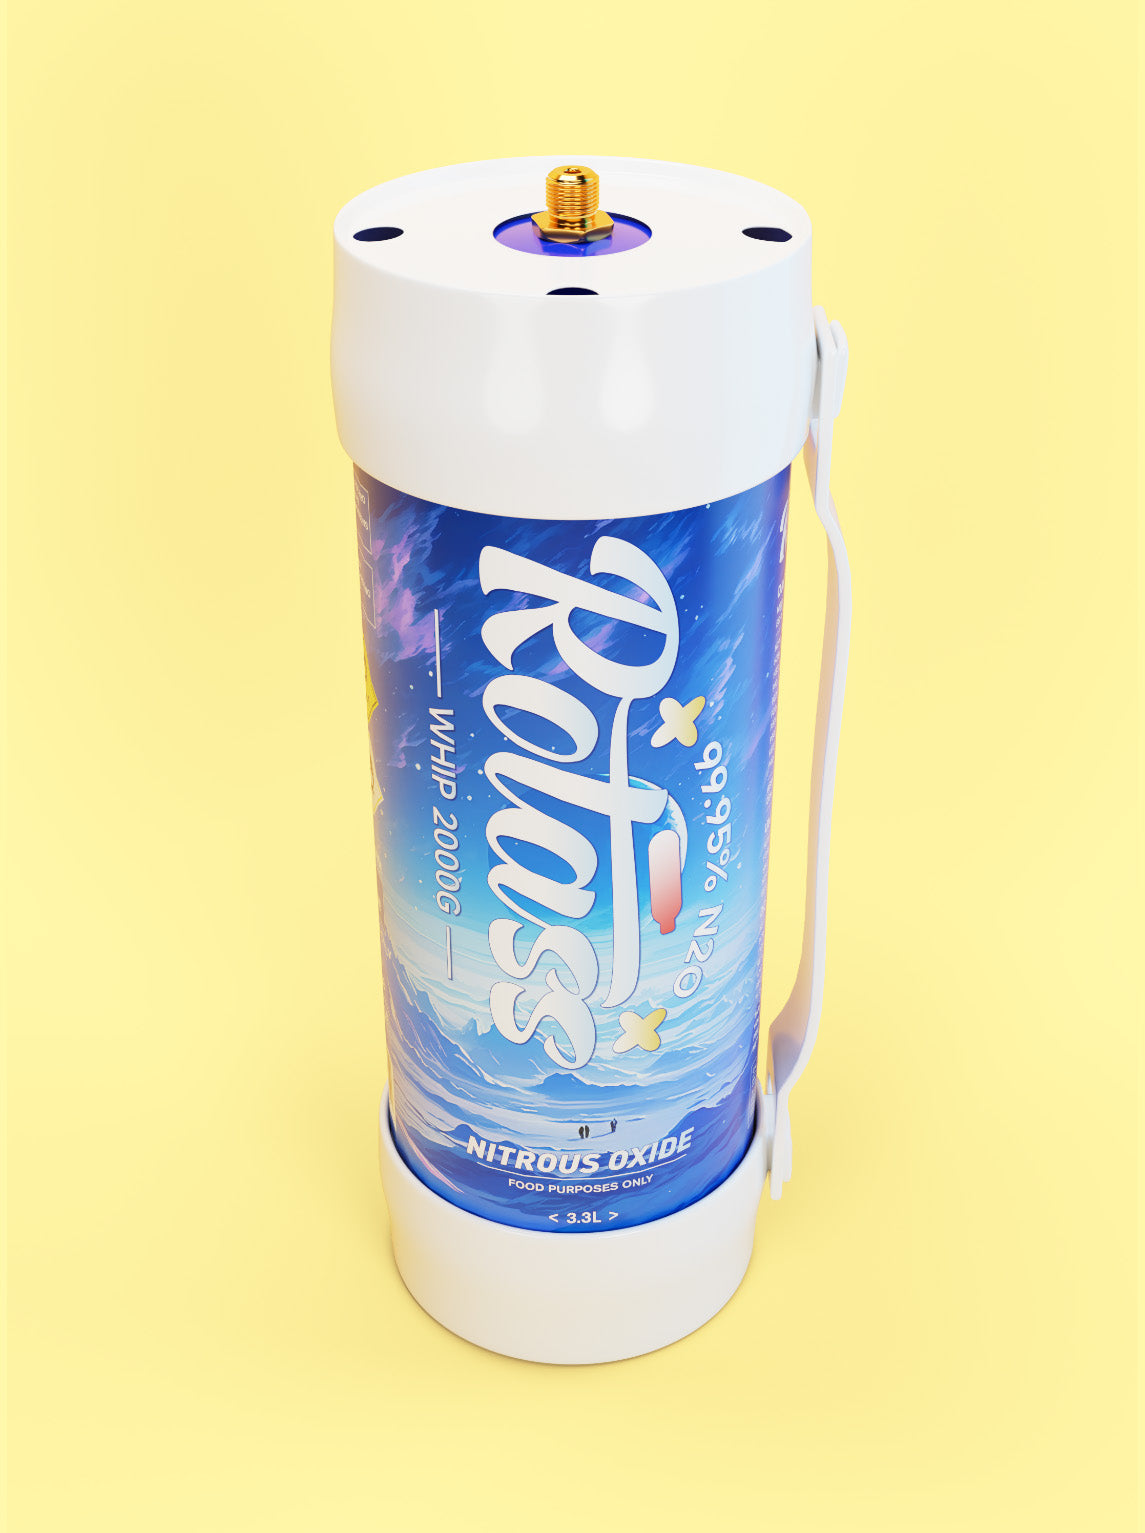 Ansicht von oben: Die Gasflasche ist im Antarktis-Style designed, mit dem weißen Logo "Rotass".  Unter- und Oberteil der Flasche sind weiß und mit einem Gummiband befestige, sodass eine Tragmöglichkeit gewährleistet ist. Der Hintergrund ist hellgelb.